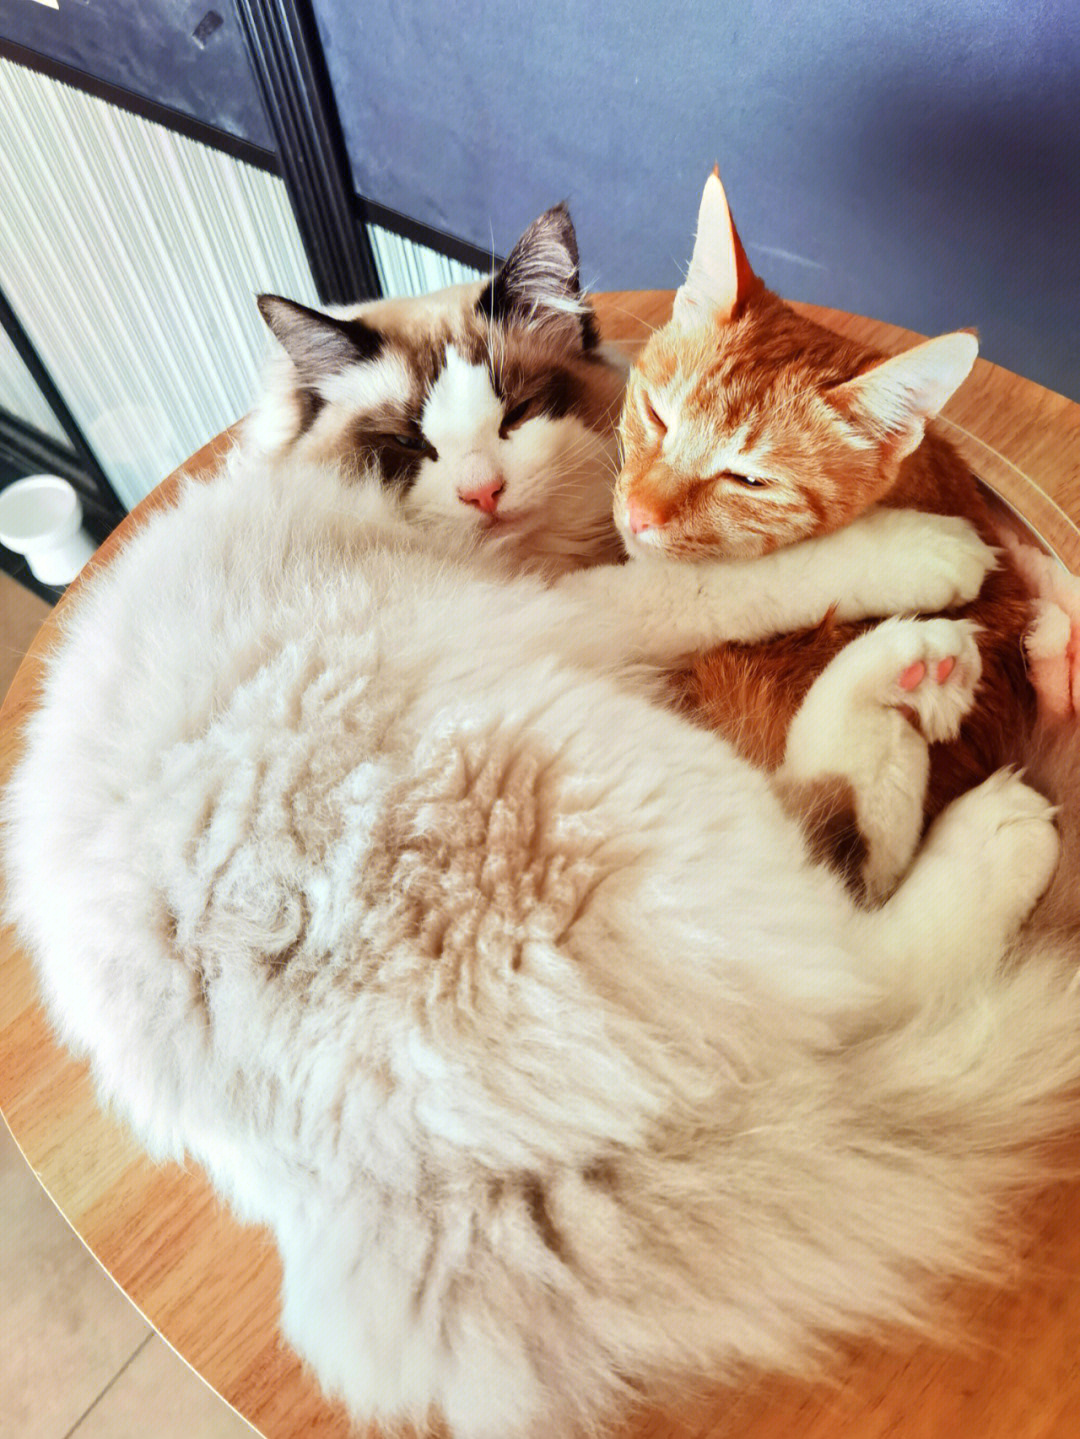 橘猫和布偶猫杂交图片